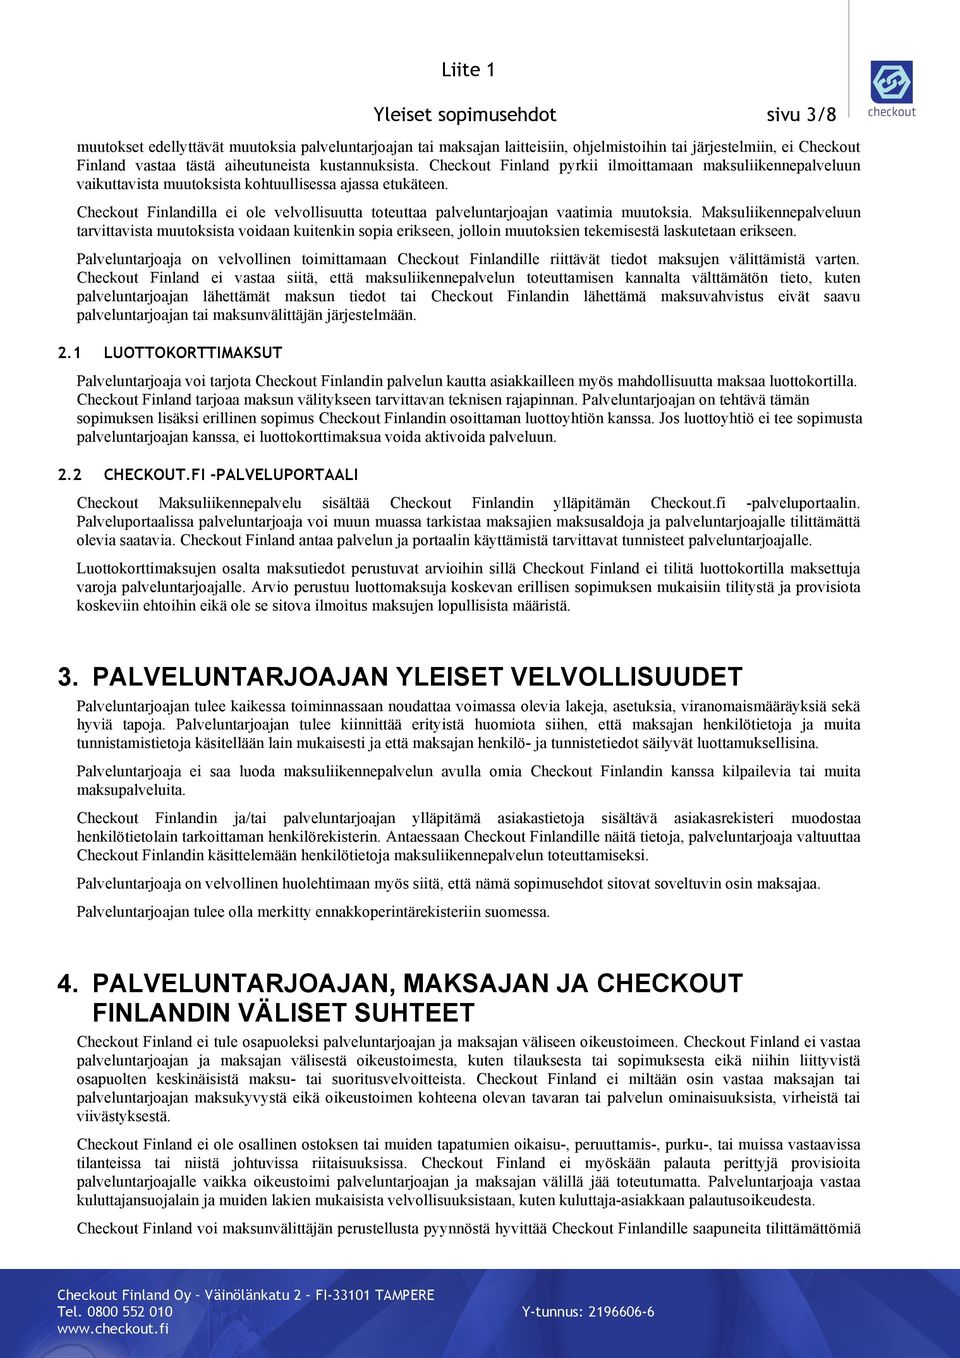 Checkout Finlandilla ei ole velvollisuutta toteuttaa palveluntarjoajan vaatimia muutoksia.